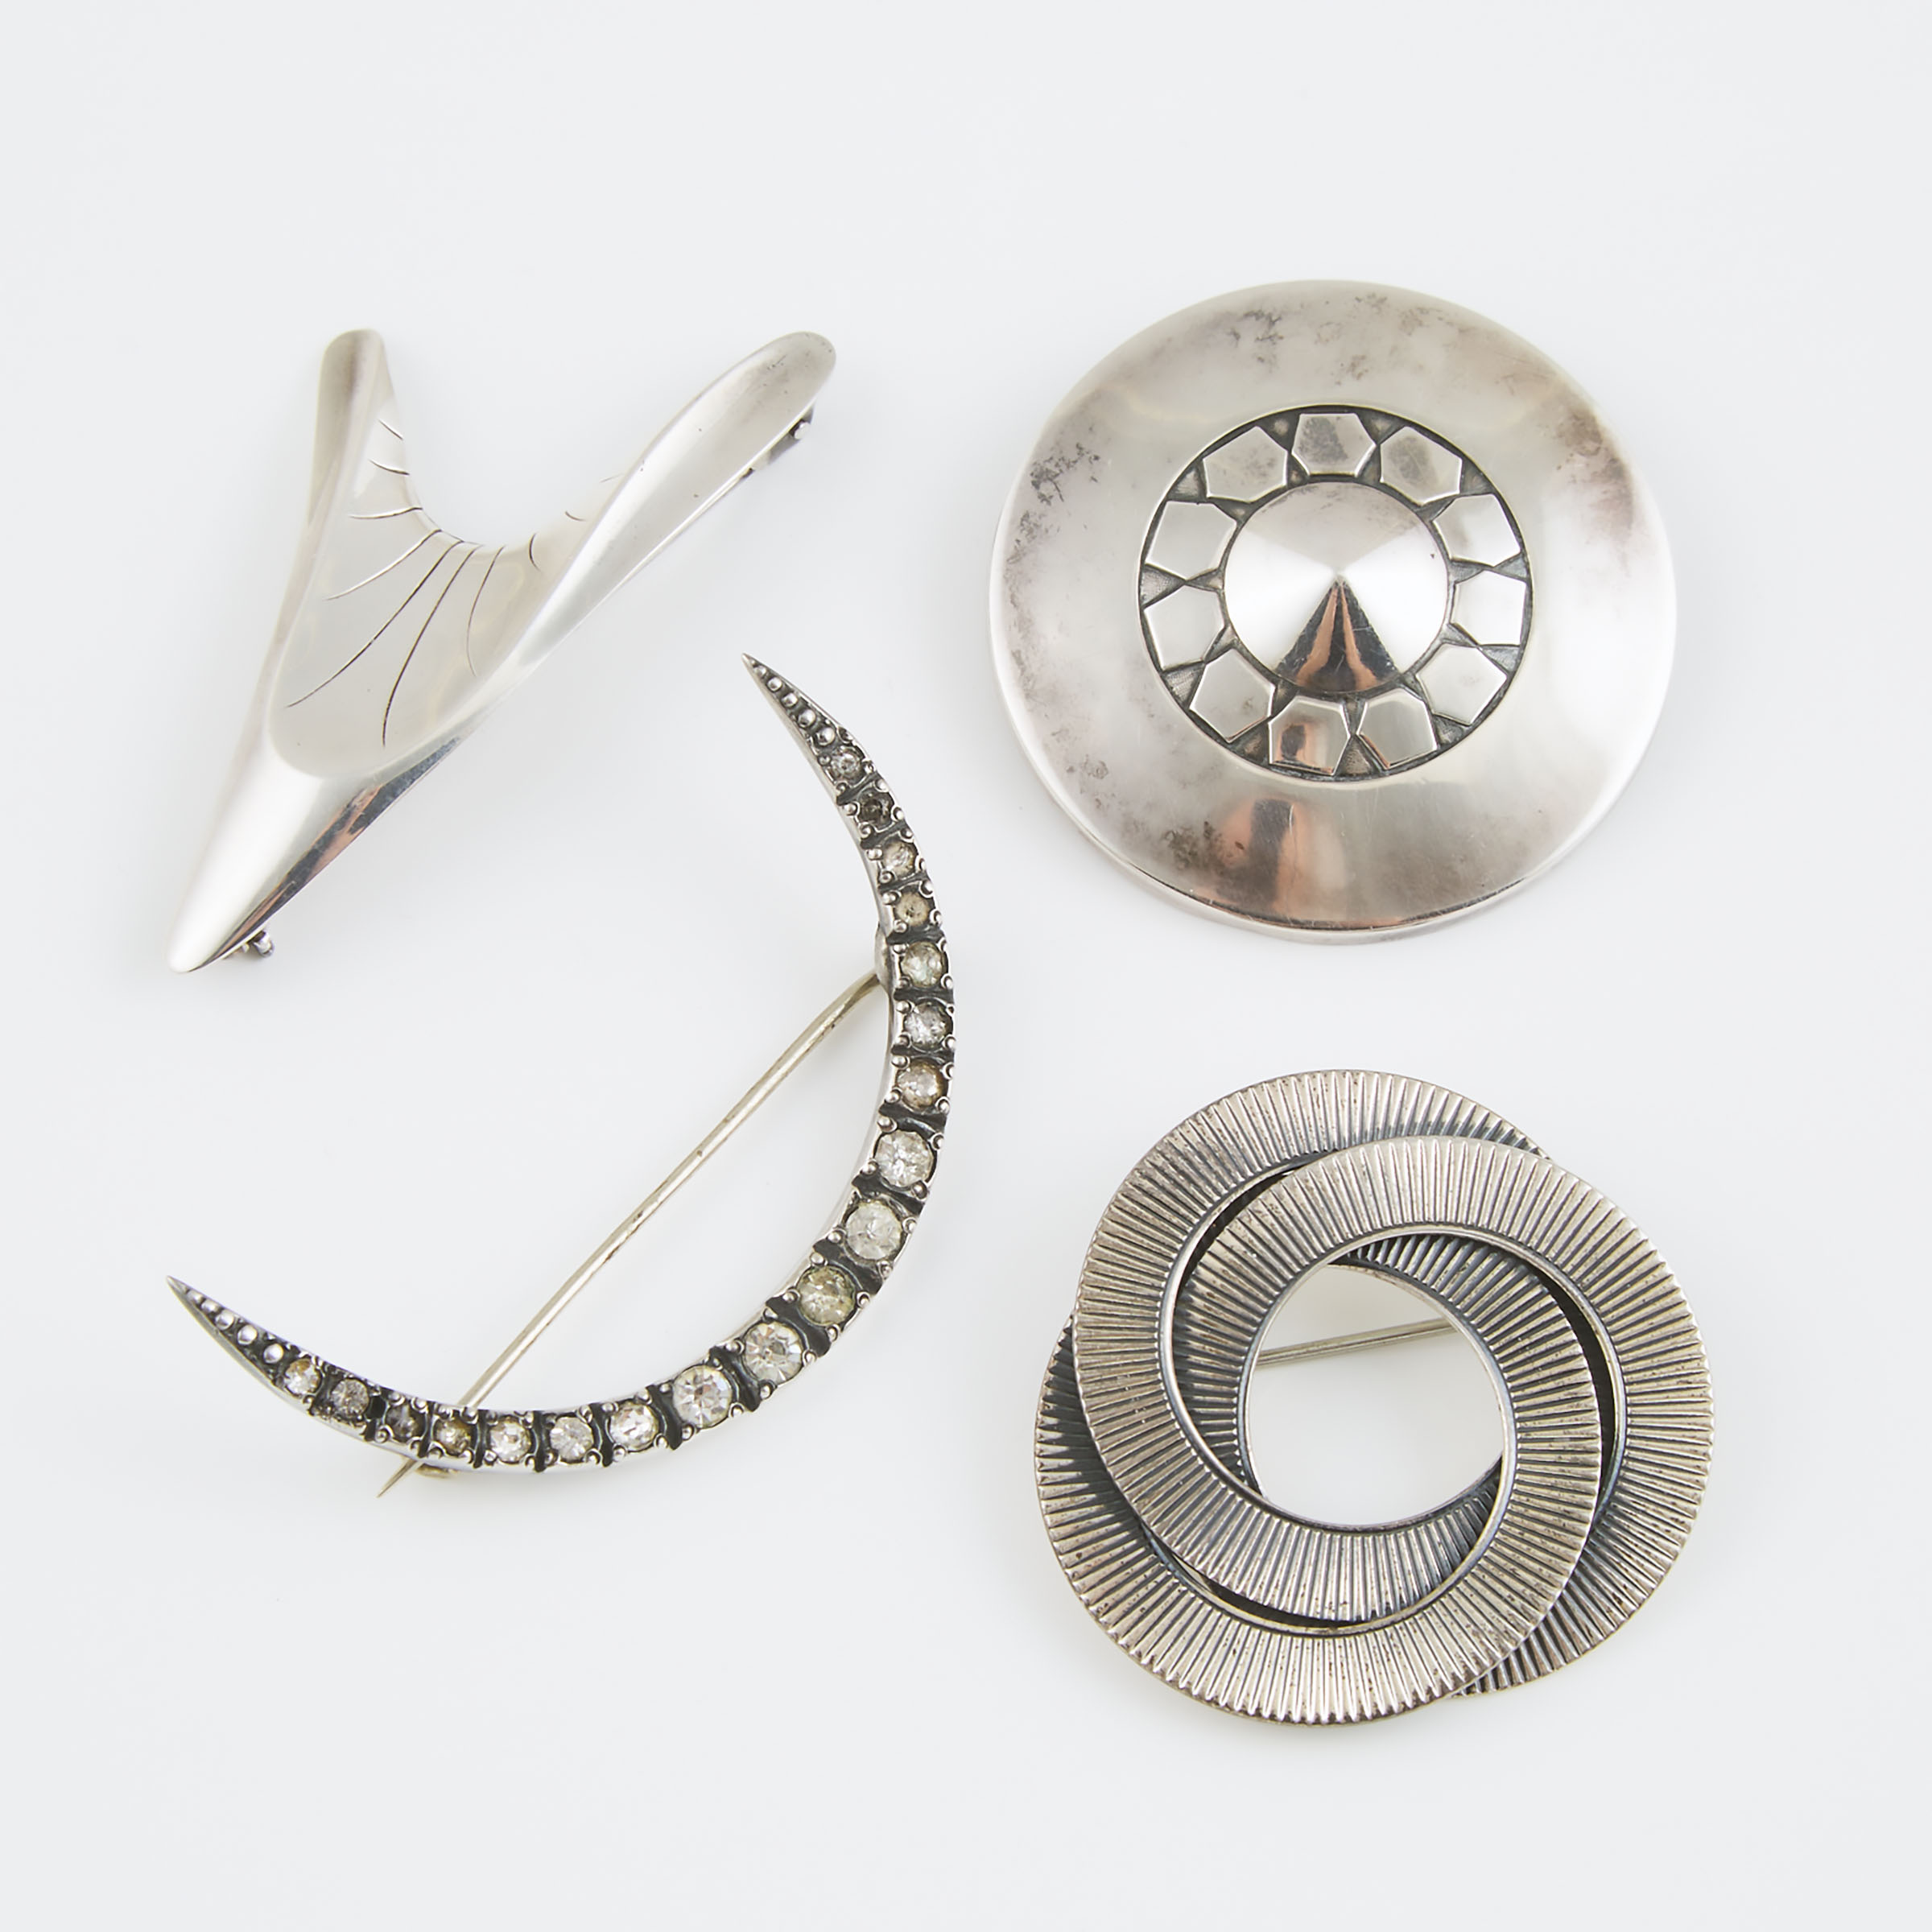 4 Various Silver Pins